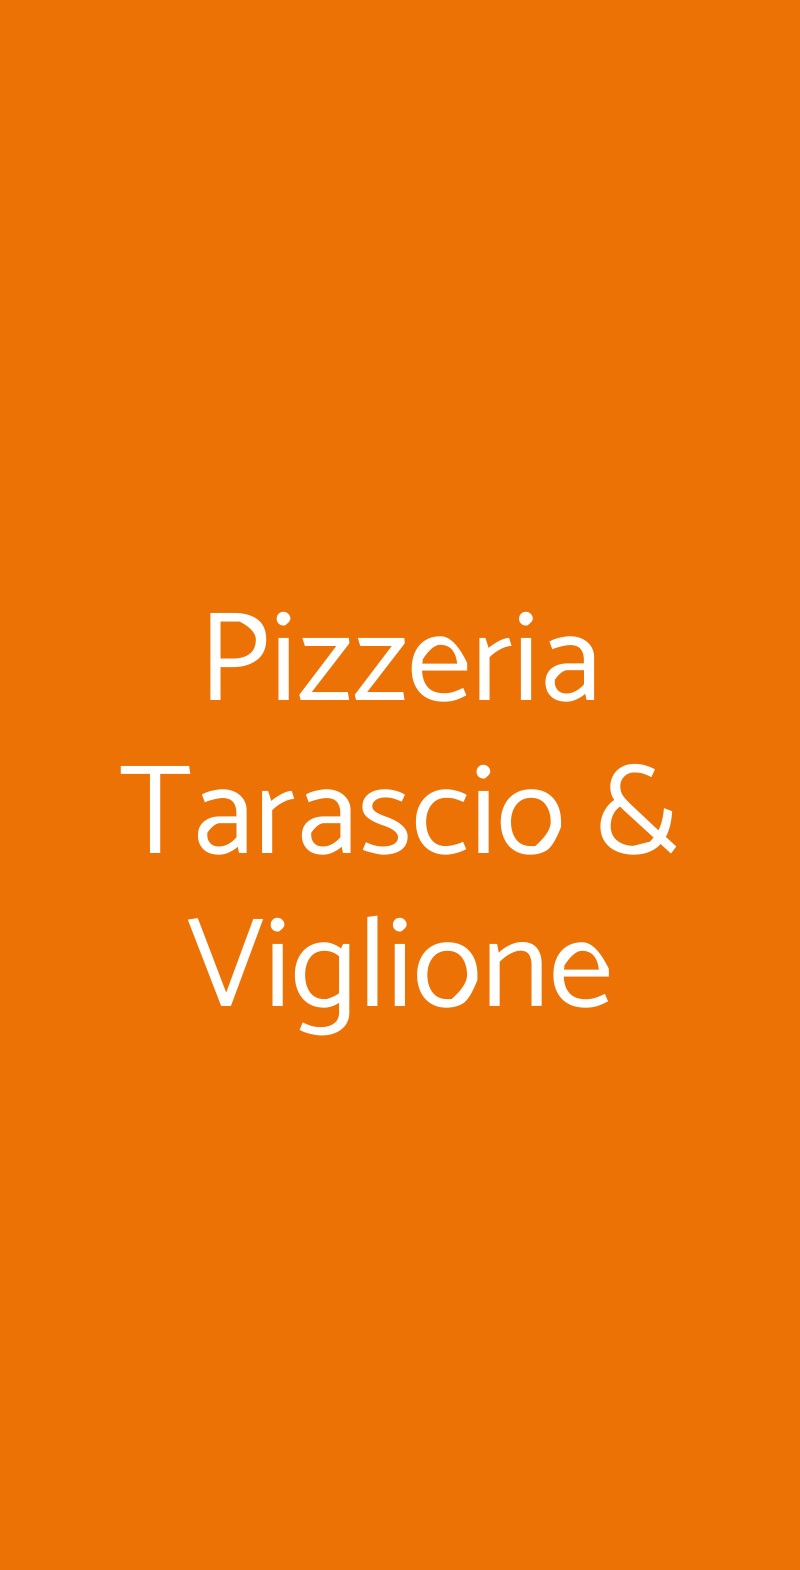 Pizzeria Tarascio & Viglione Napoli menù 1 pagina